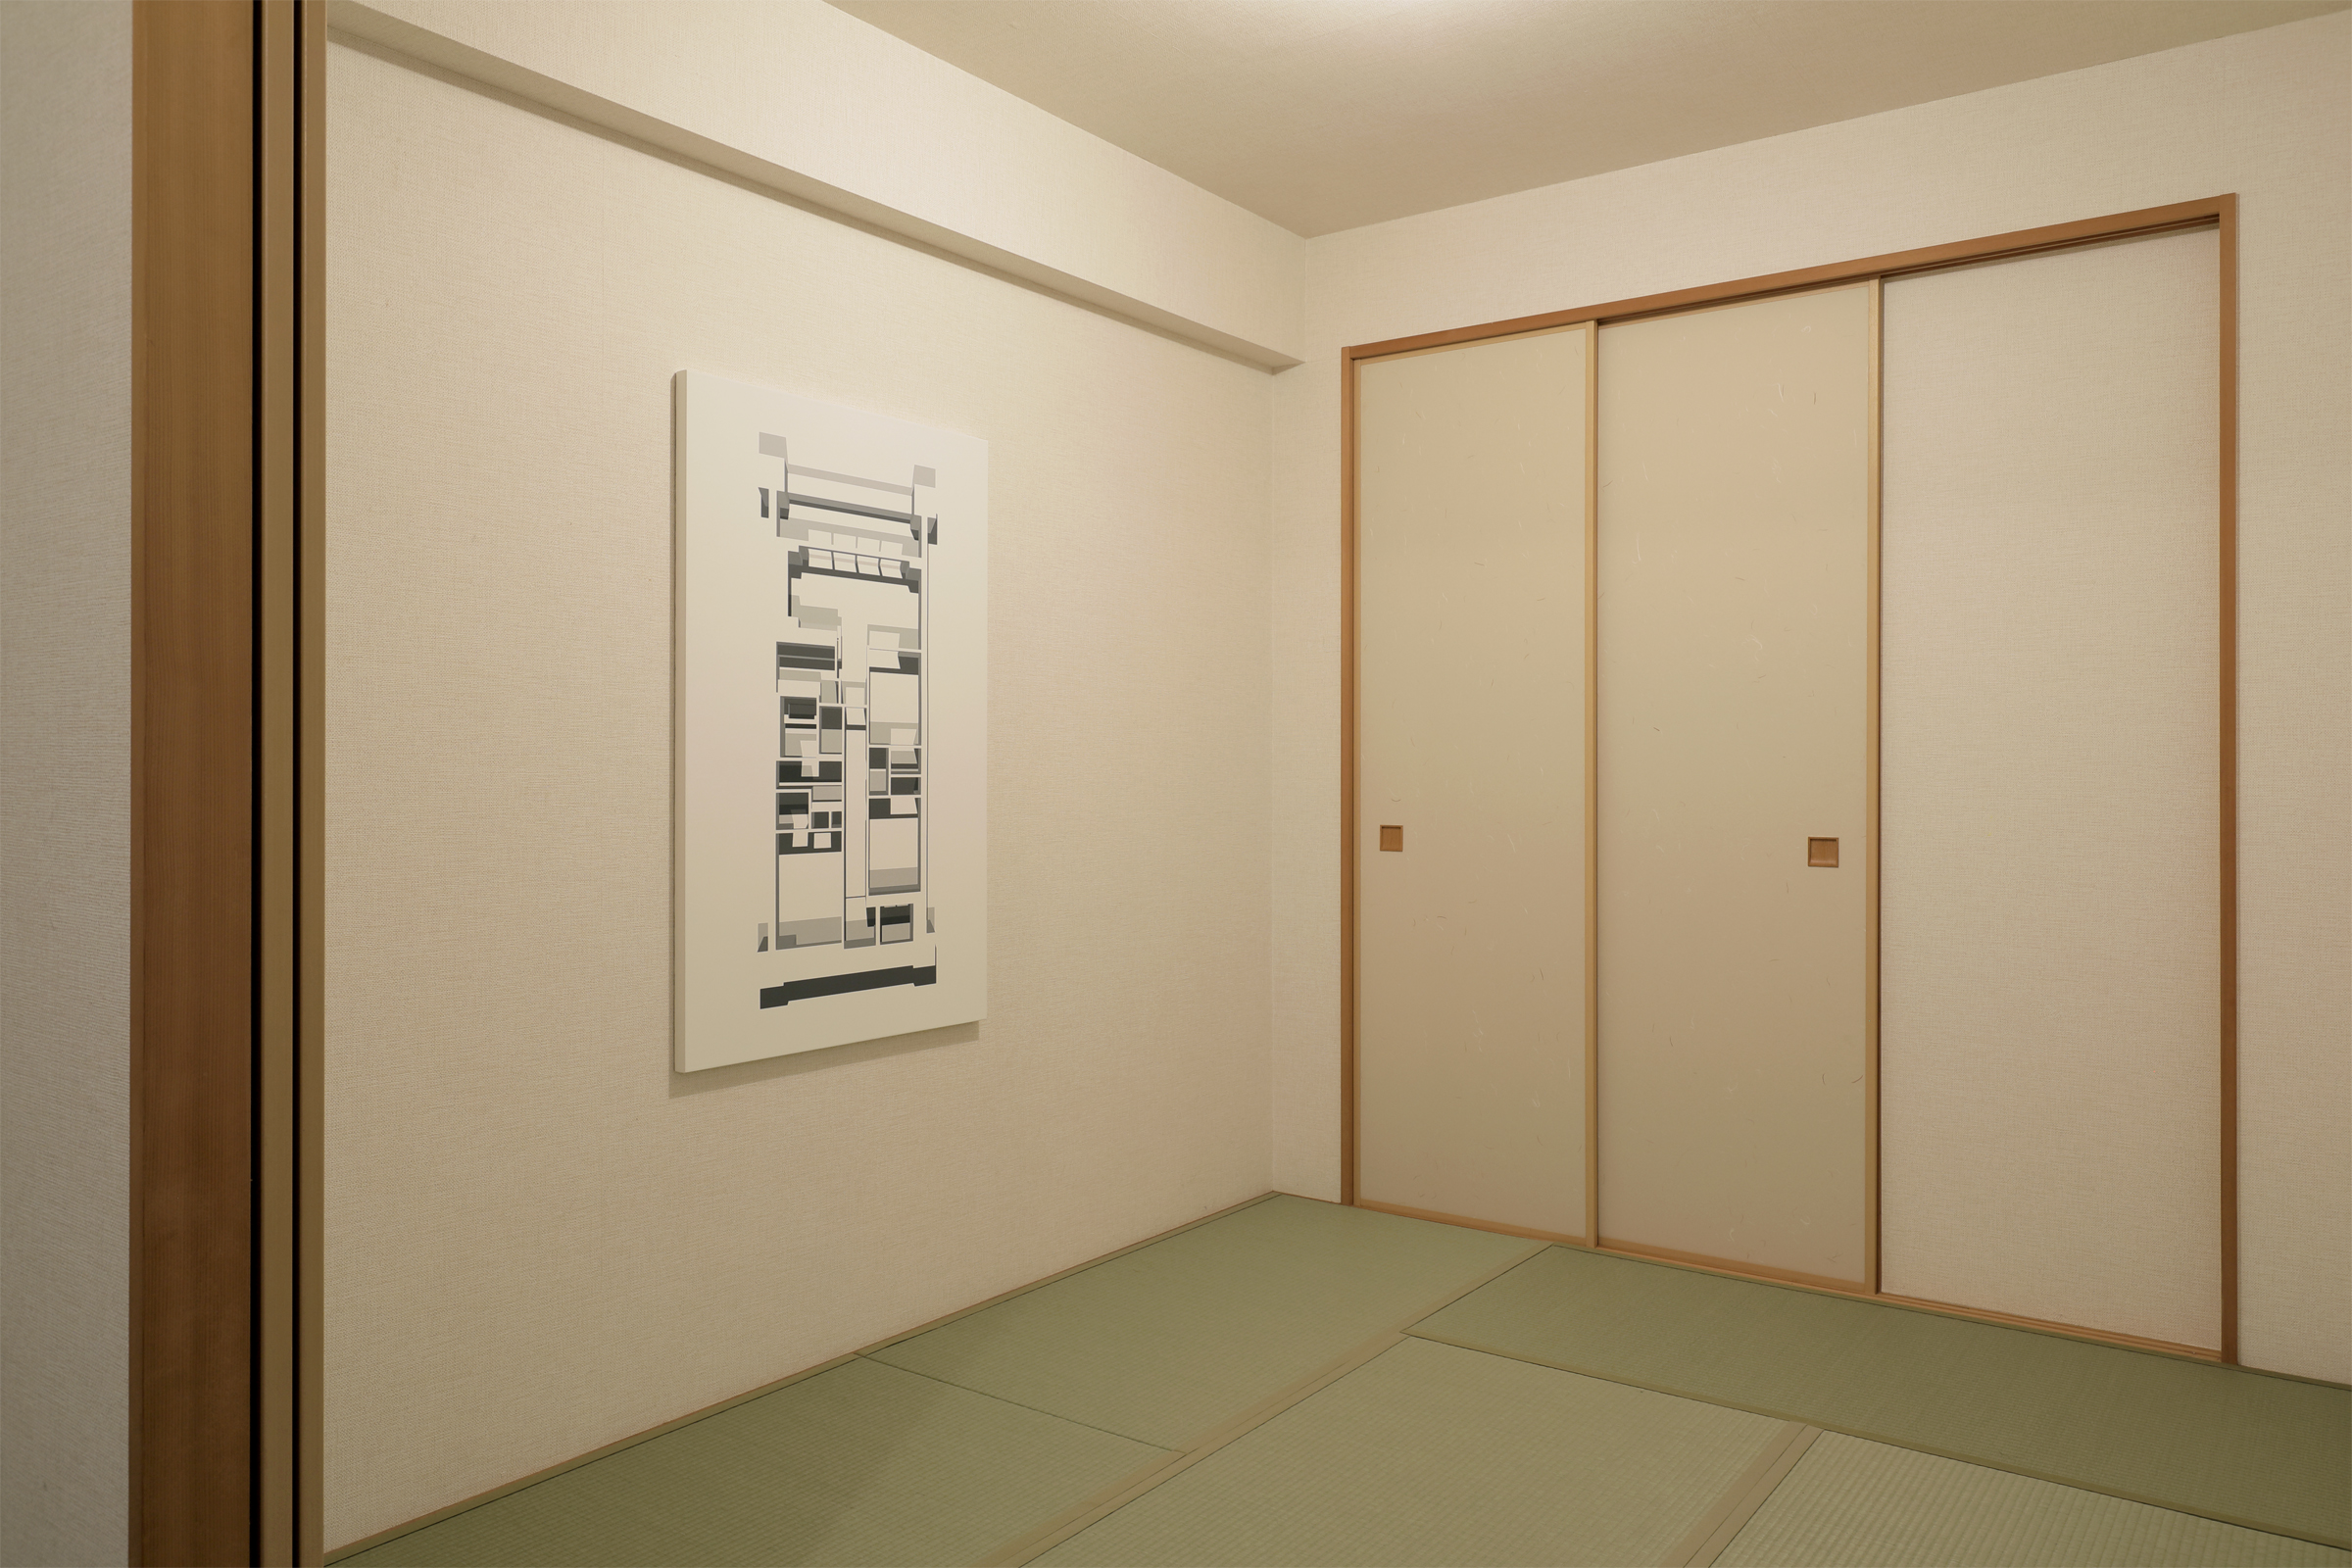 佐々木耕太 ＋ 中尾拓哉　Kota Sasaki ＋ Takuya Nakao/some_or_same/installation view/2019